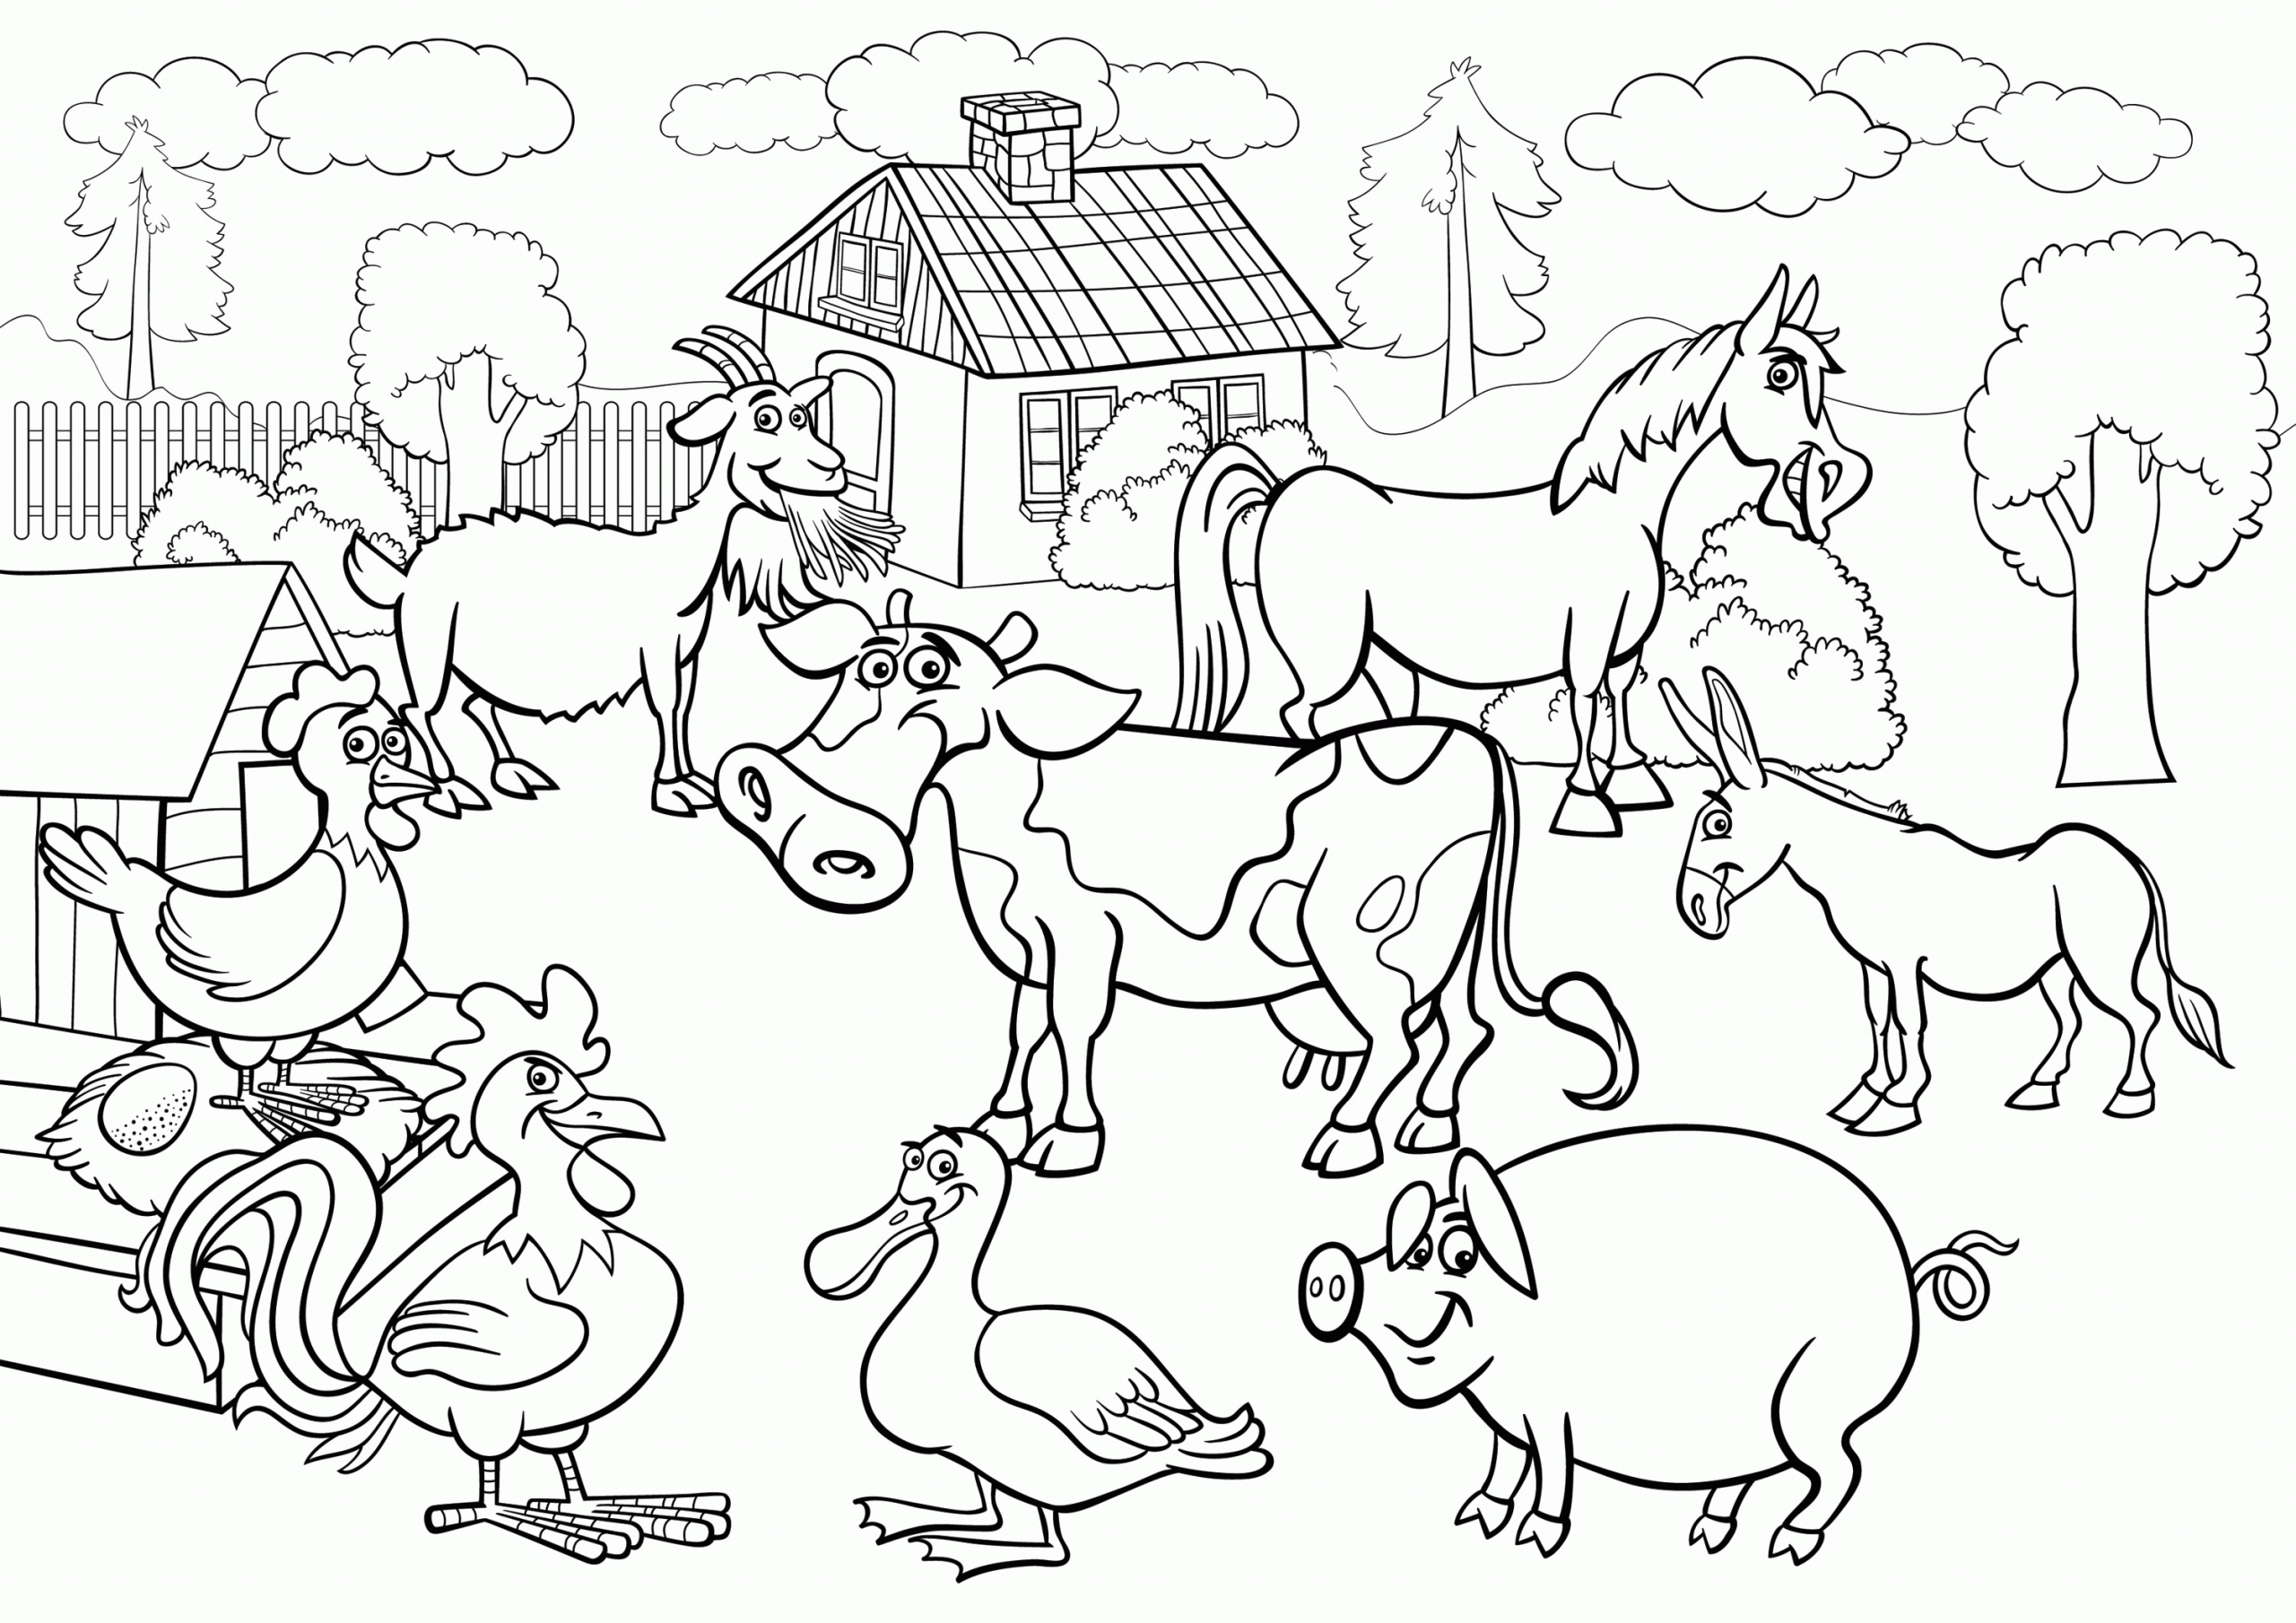 Animals in a Farm